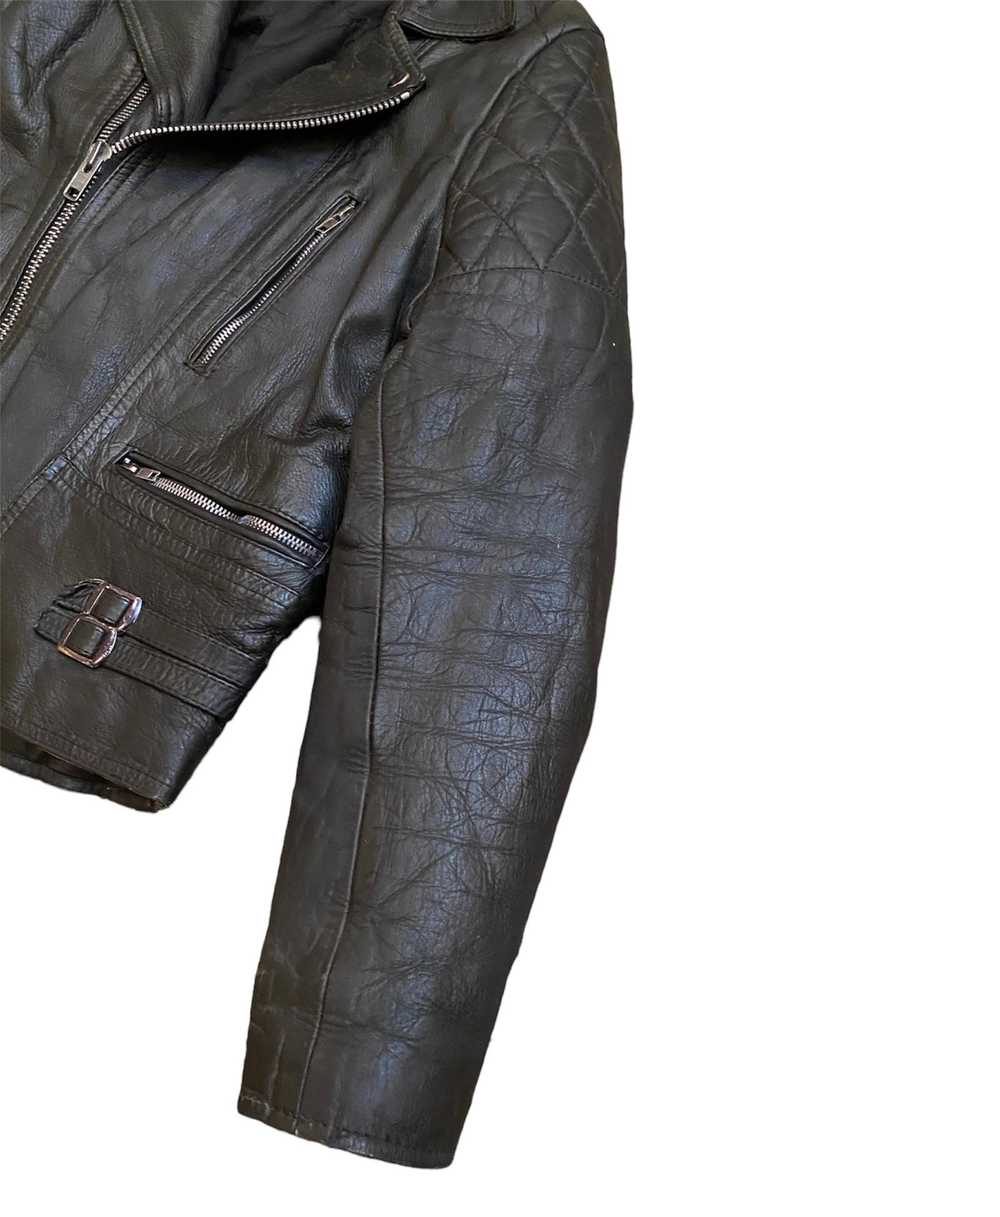 Leather Jacket × Rare × Vintage Vintage 80s Briti… - image 4